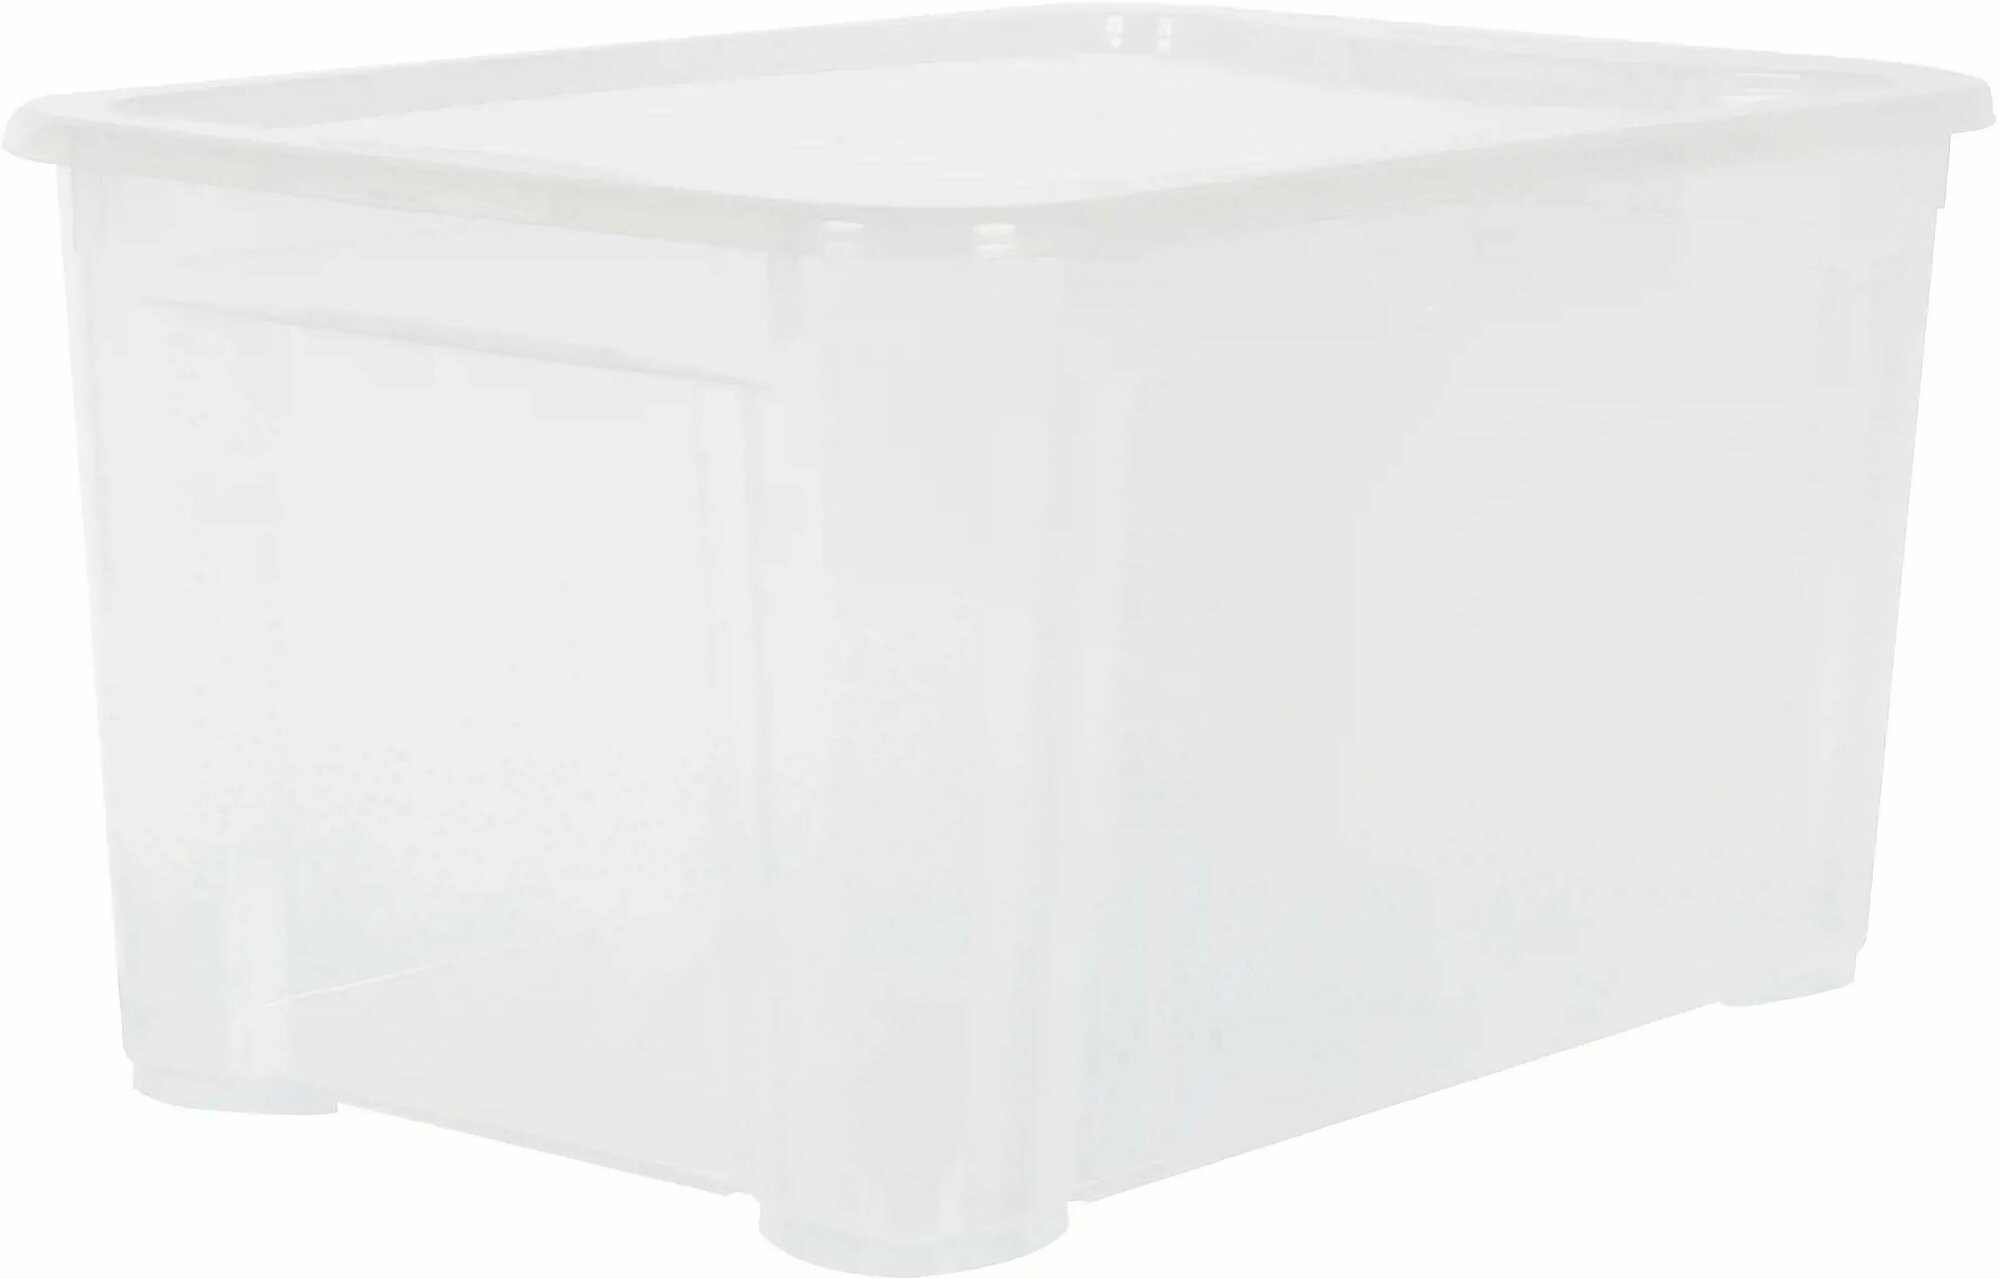 Ящик, 55.5x39x29 см: основным материалом изделия является высококачественный пластик; идет в комплекте с крышкой; цвет прозрачный